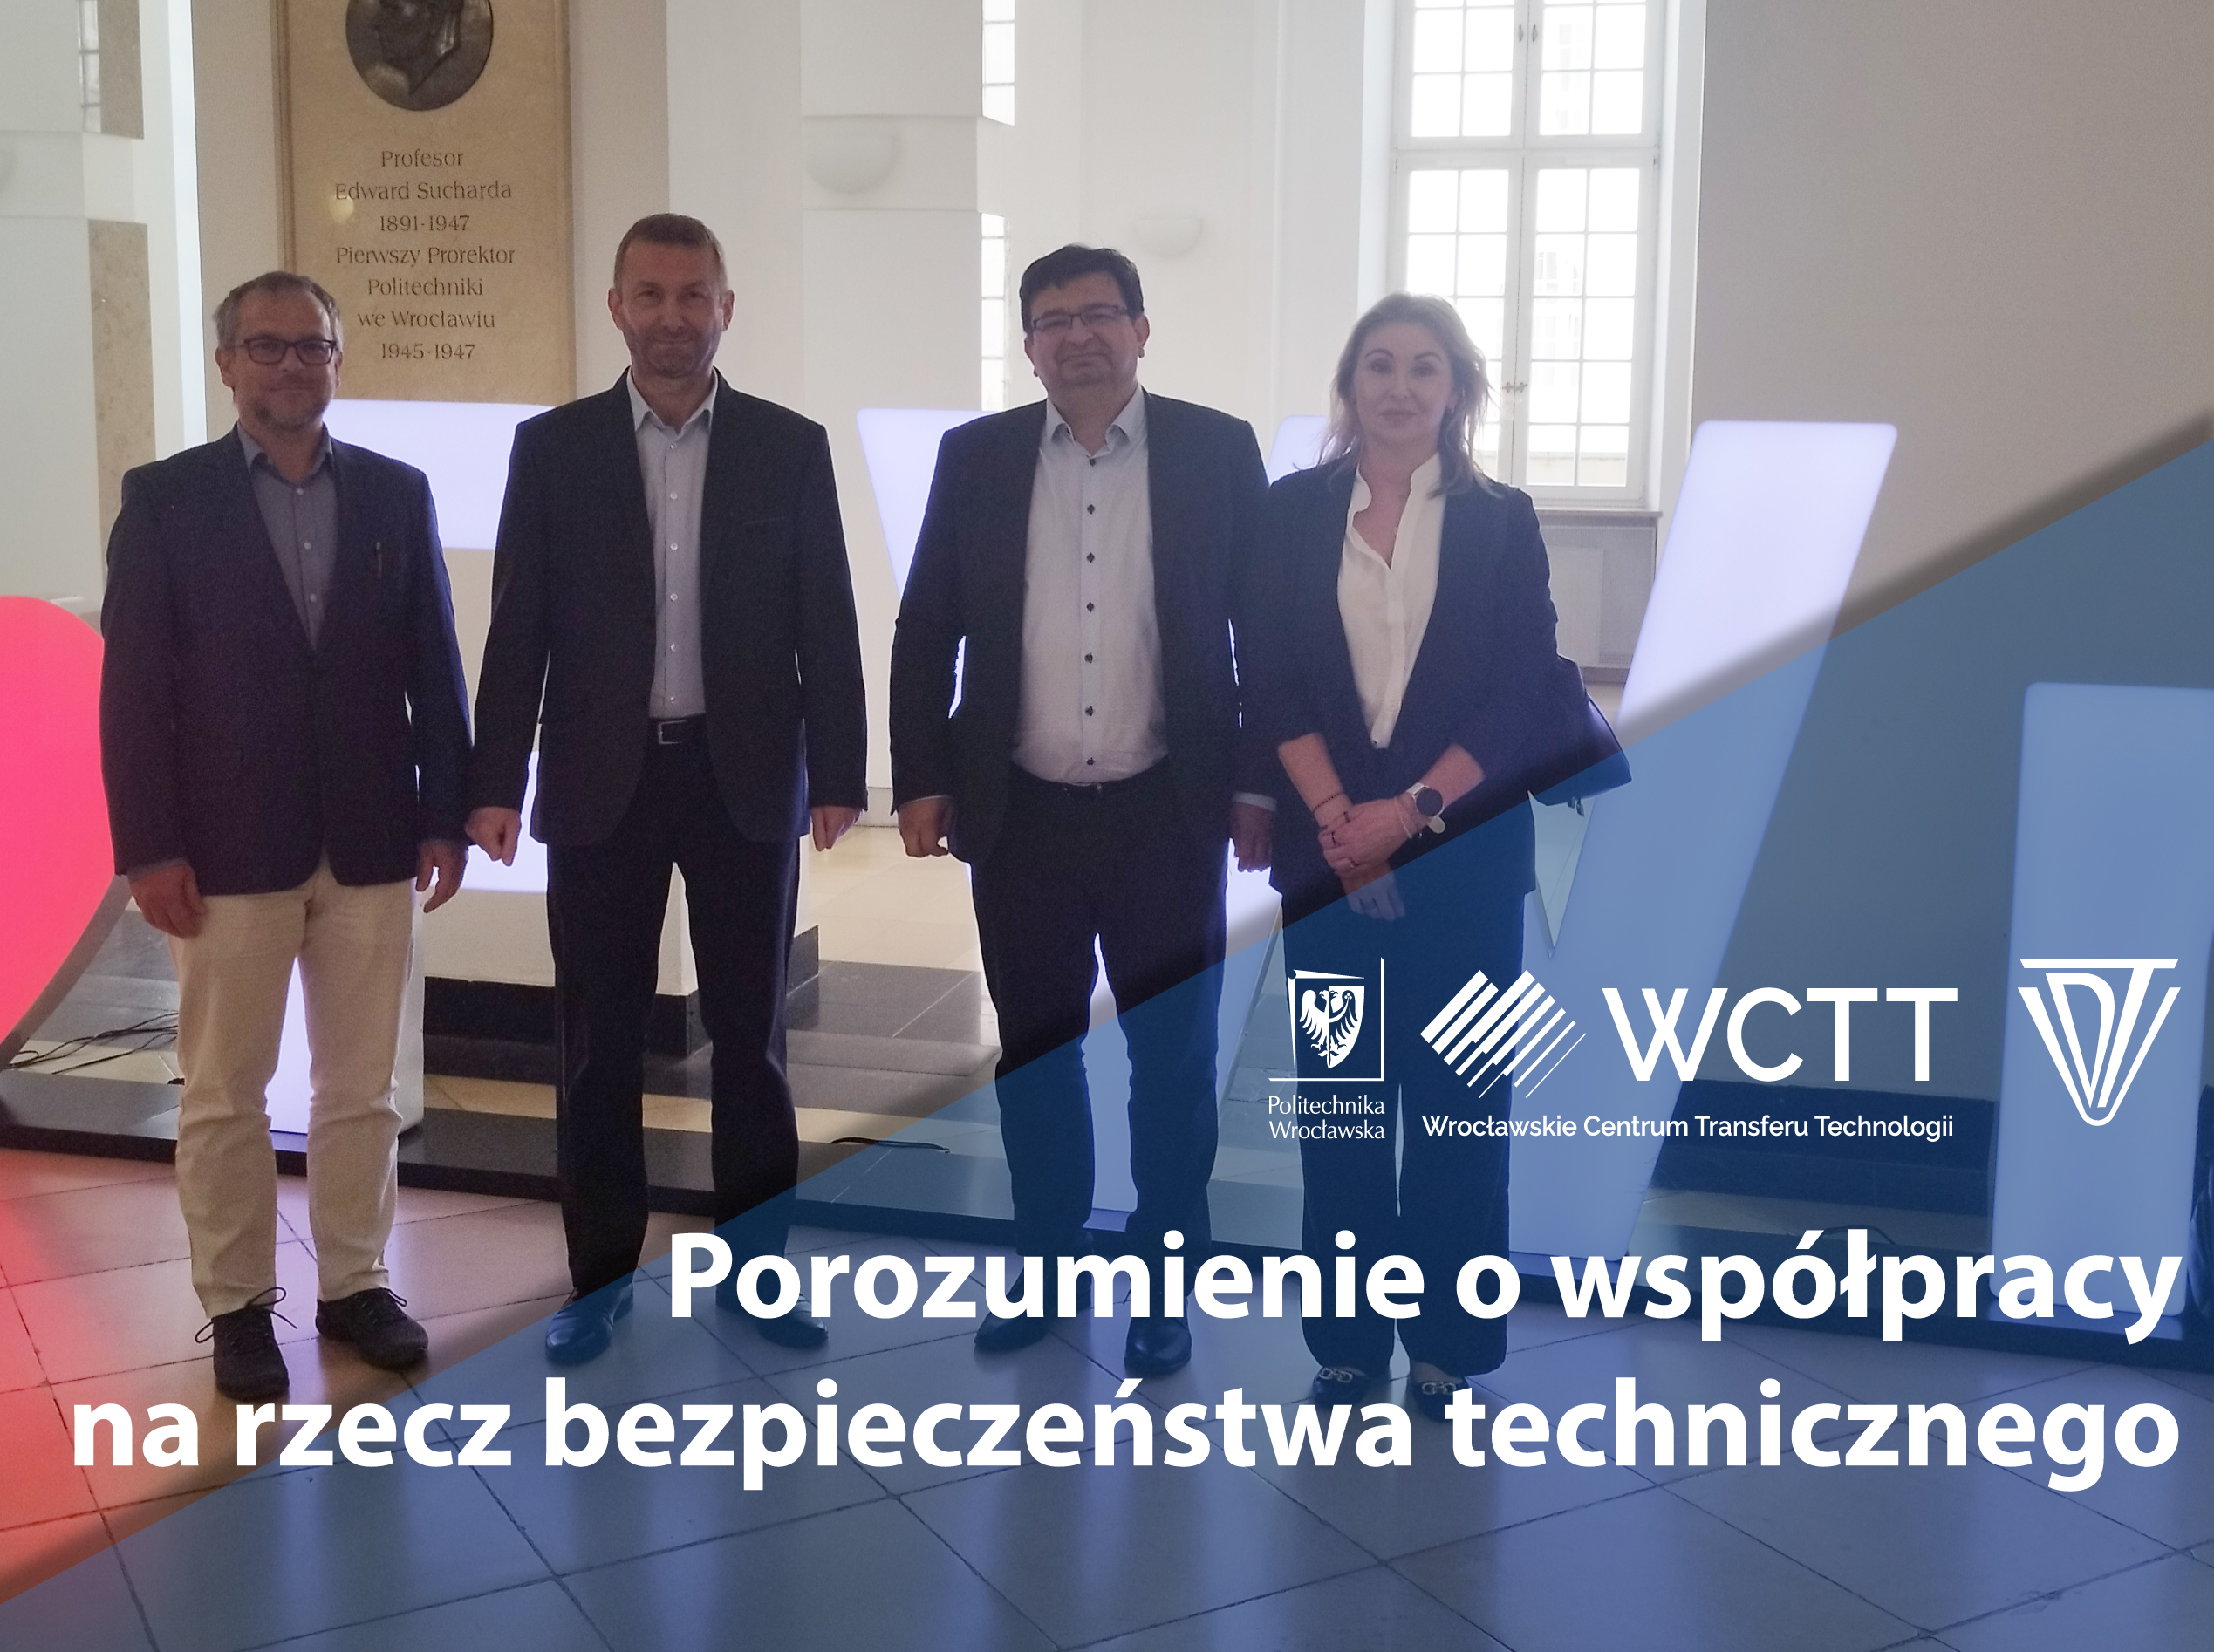 Zawarto współpracę na rzecz bezpieczeństwa technicznego pomiędzy UDT a WCTT PWr.